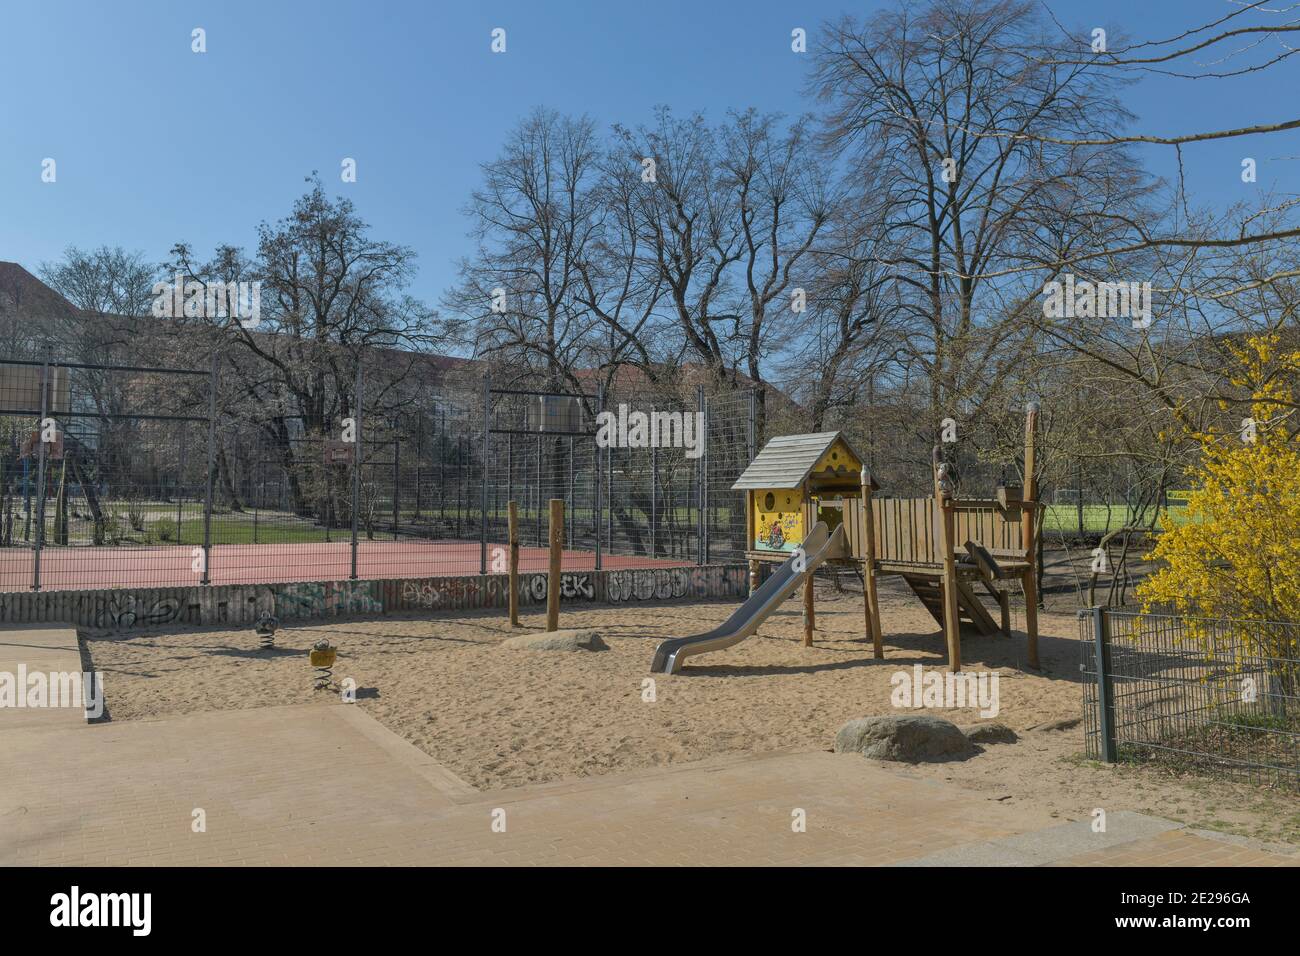 Berlin in Zeiten der Corona-Krise, 25.03.2020. Hier: Leerer Kinderspielplatz im Volkspark Wilmersdorf, Berlin, Deutschland Stock Photo